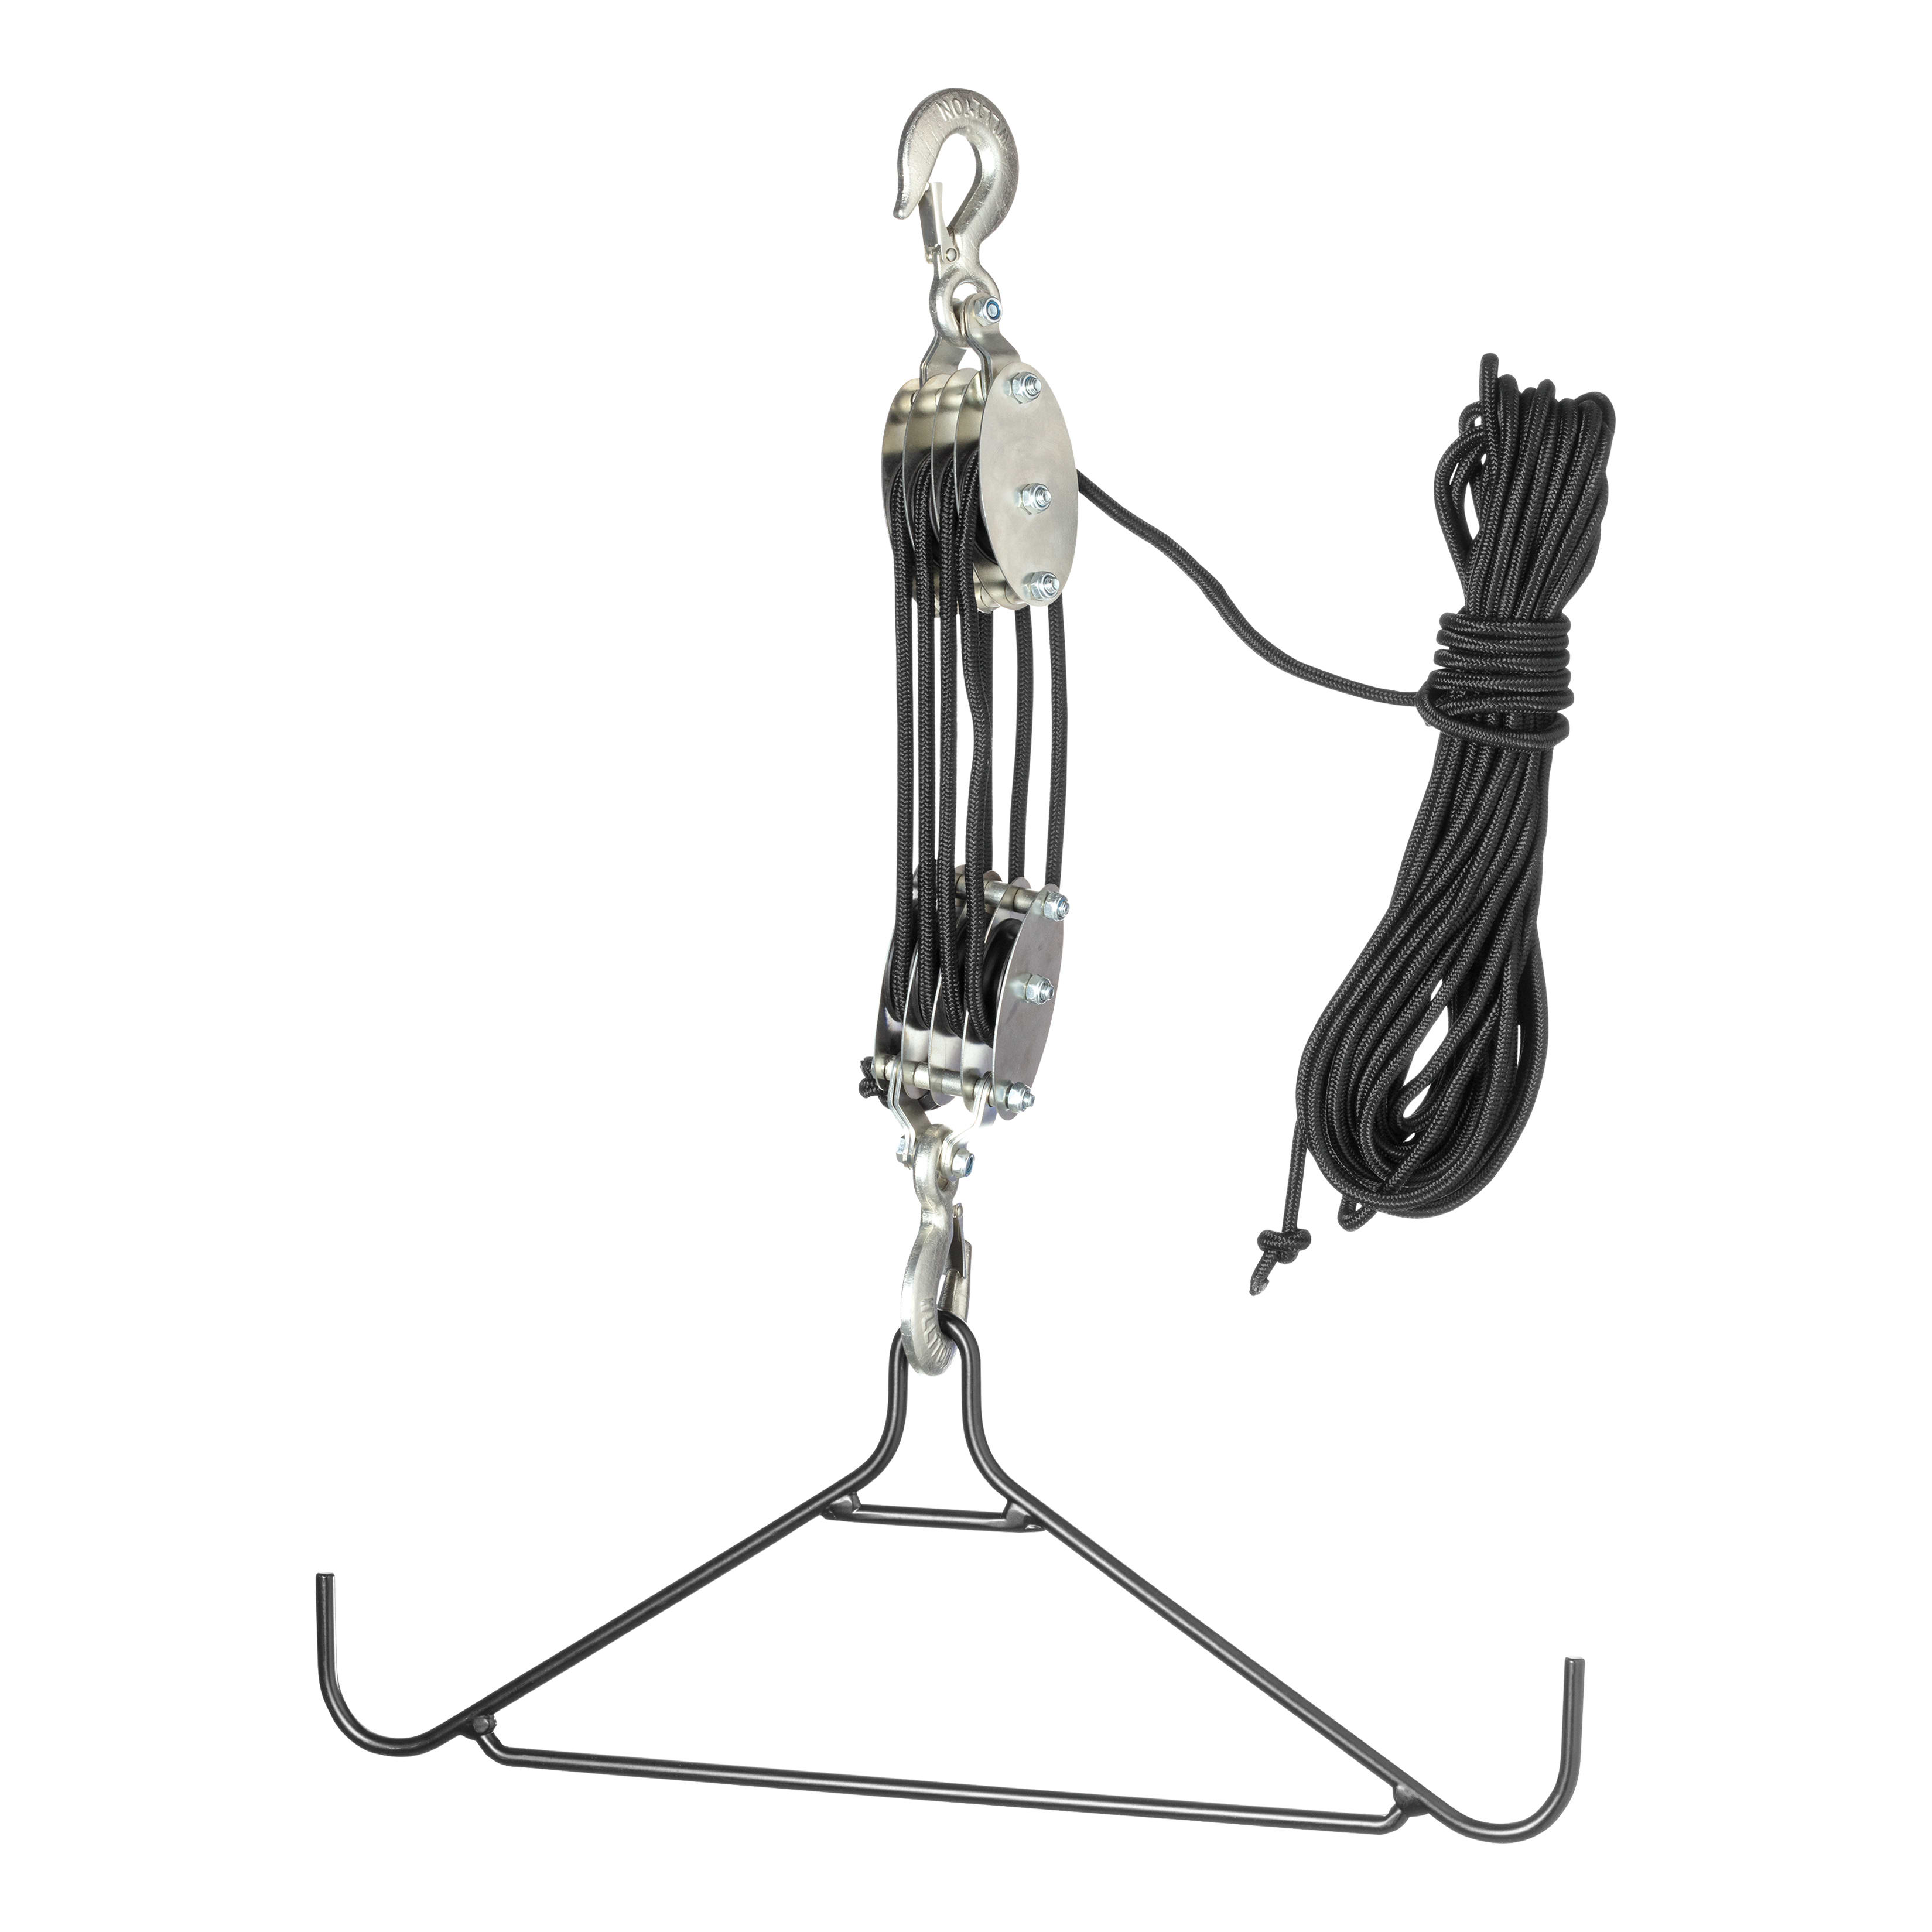 New Hme Products 4:1 Game Hanging Gambrel Olive Deer Hanger Hoist